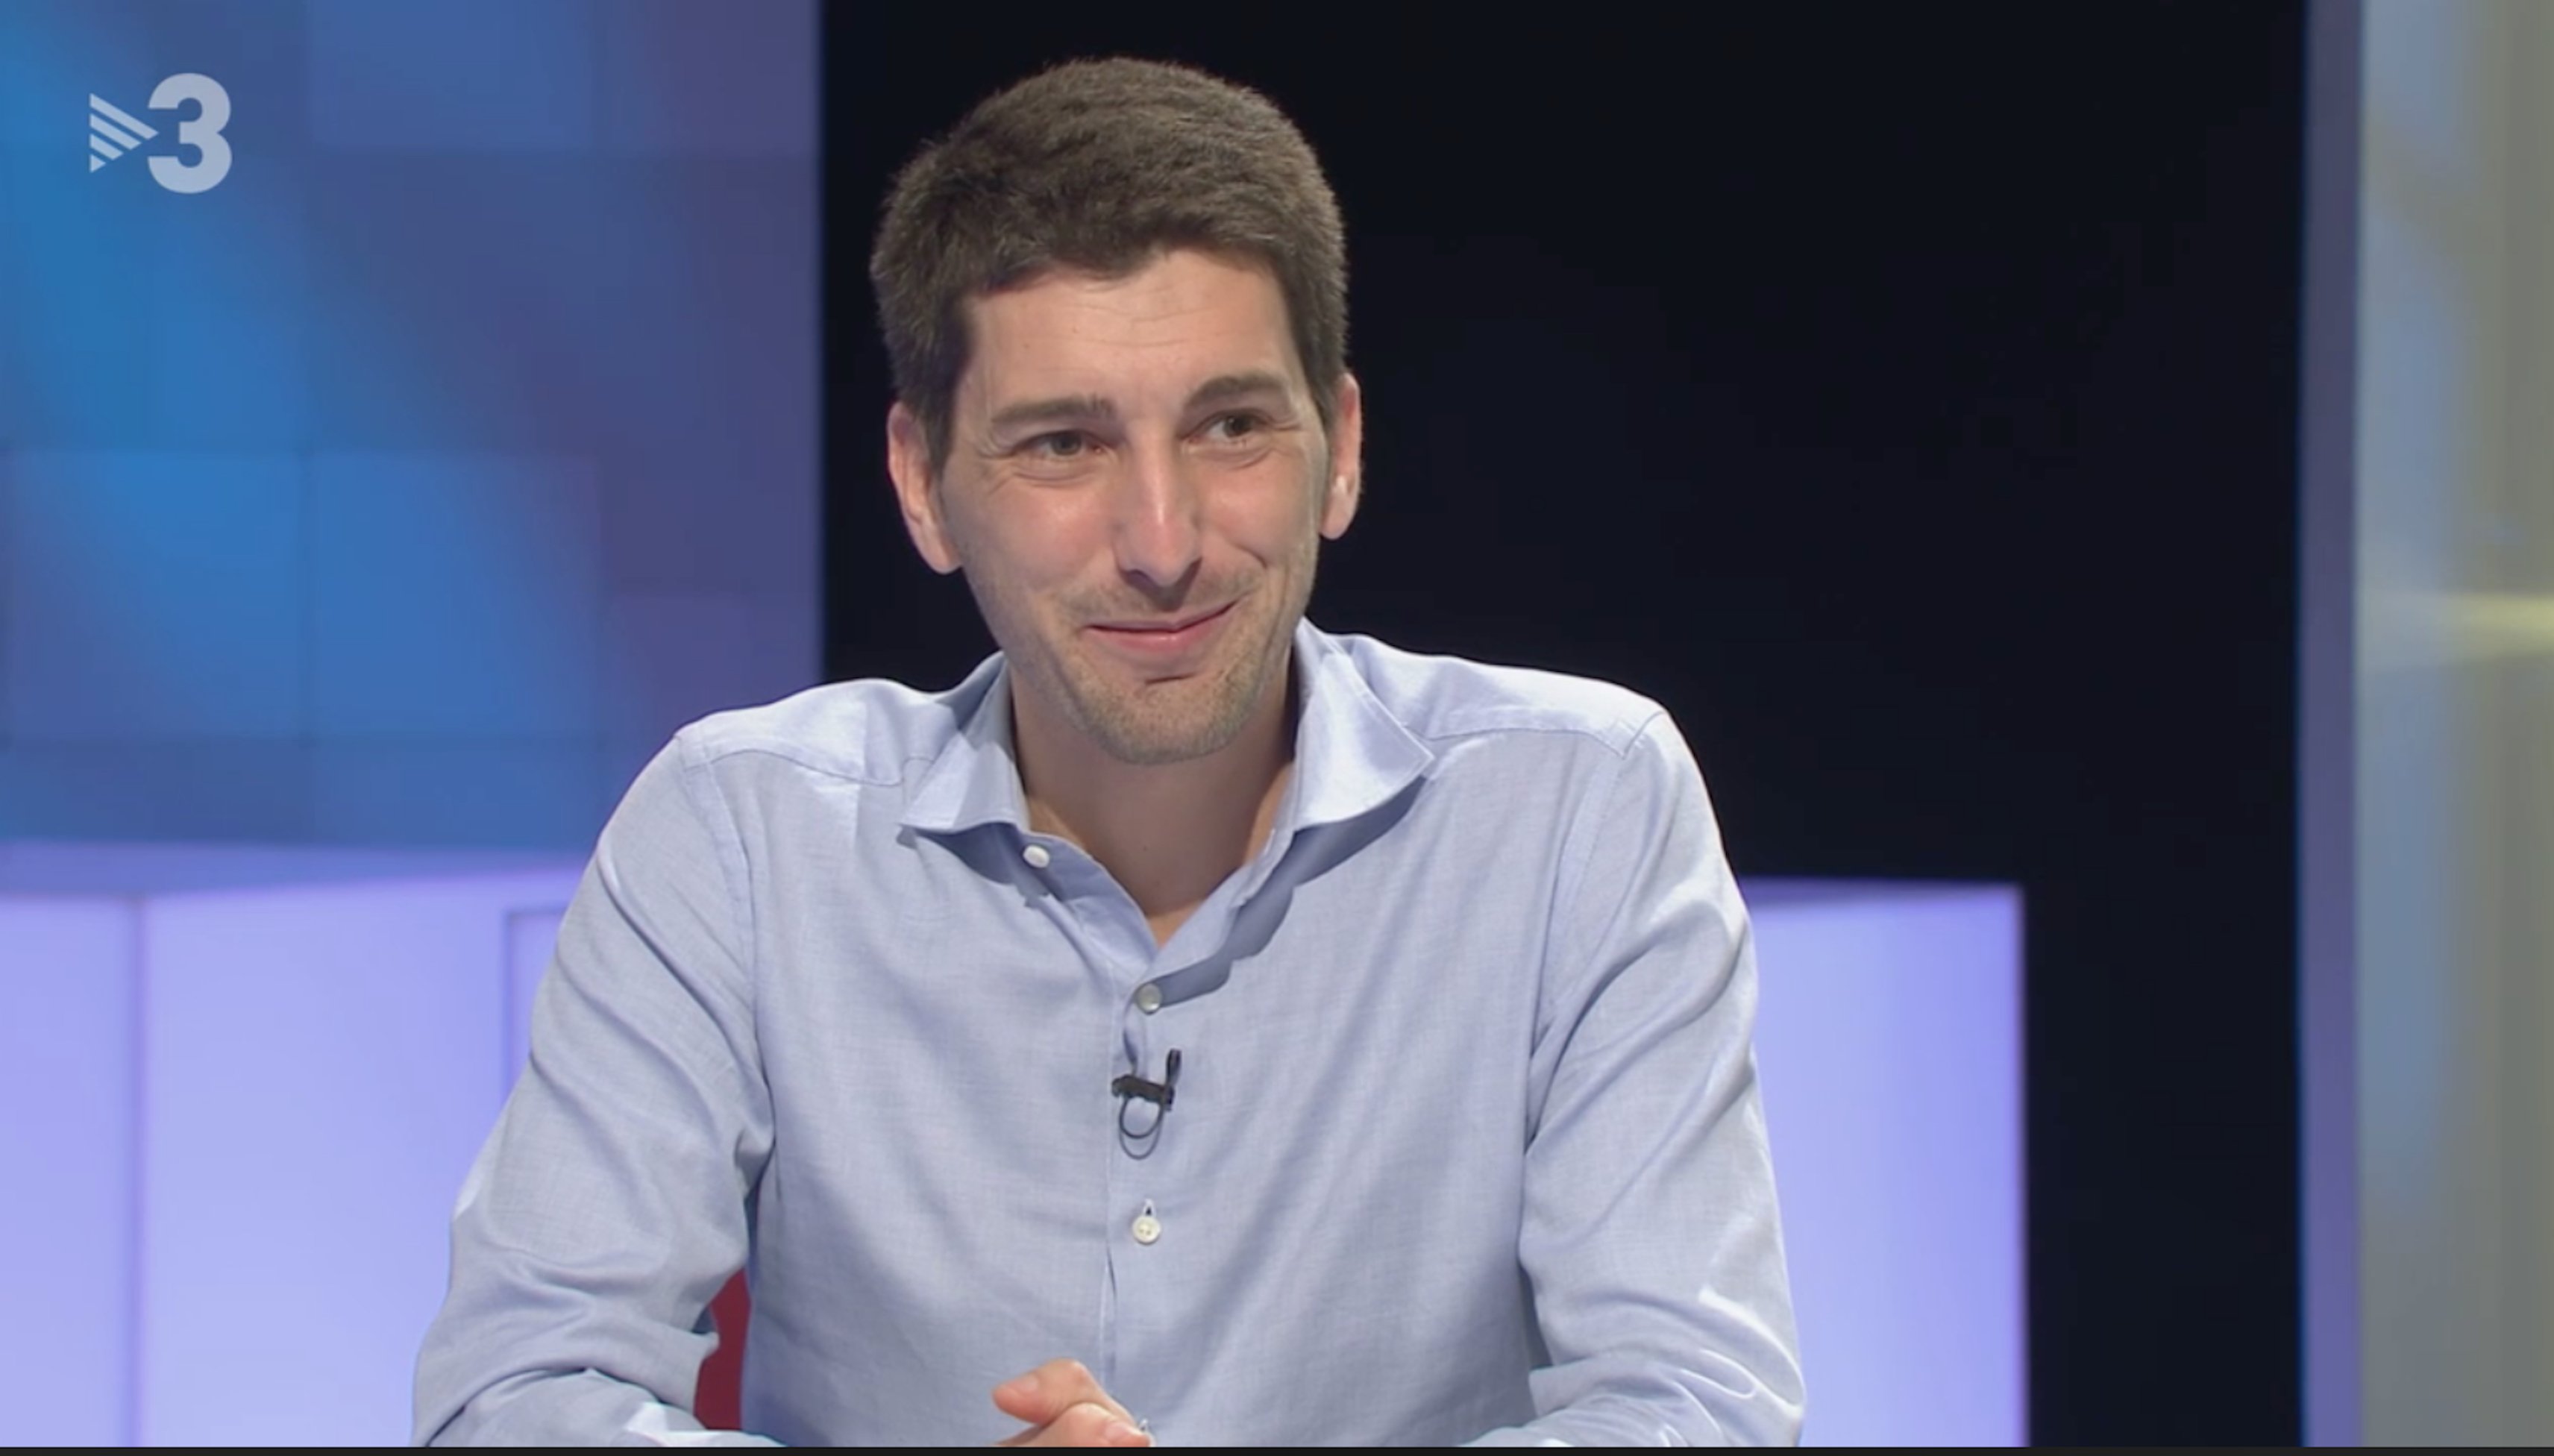 Oriol Mitjá, en TV3: "creo que no caigo bien en Madrid", la red le apoya